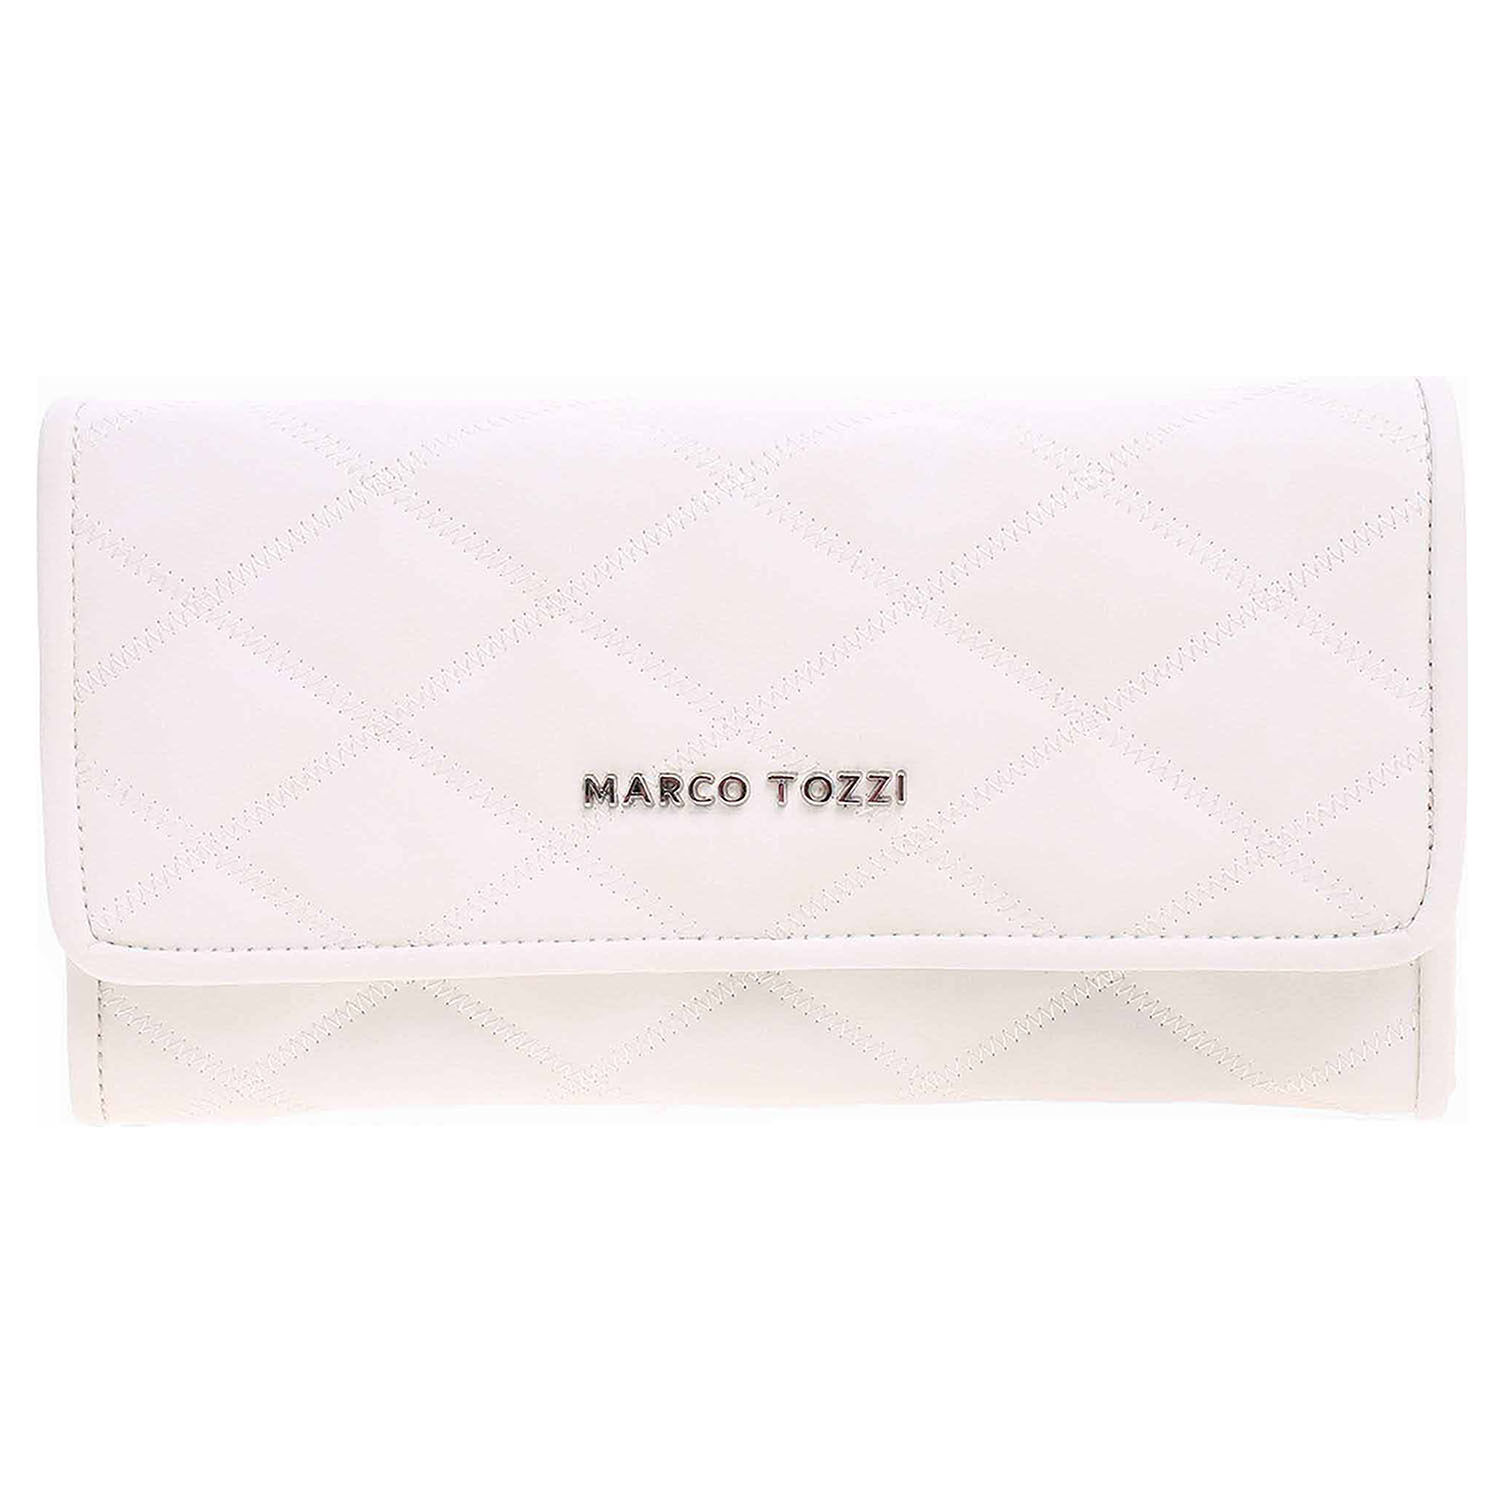 Marco Tozzi dámská peněženka 2-61134-22 white 1